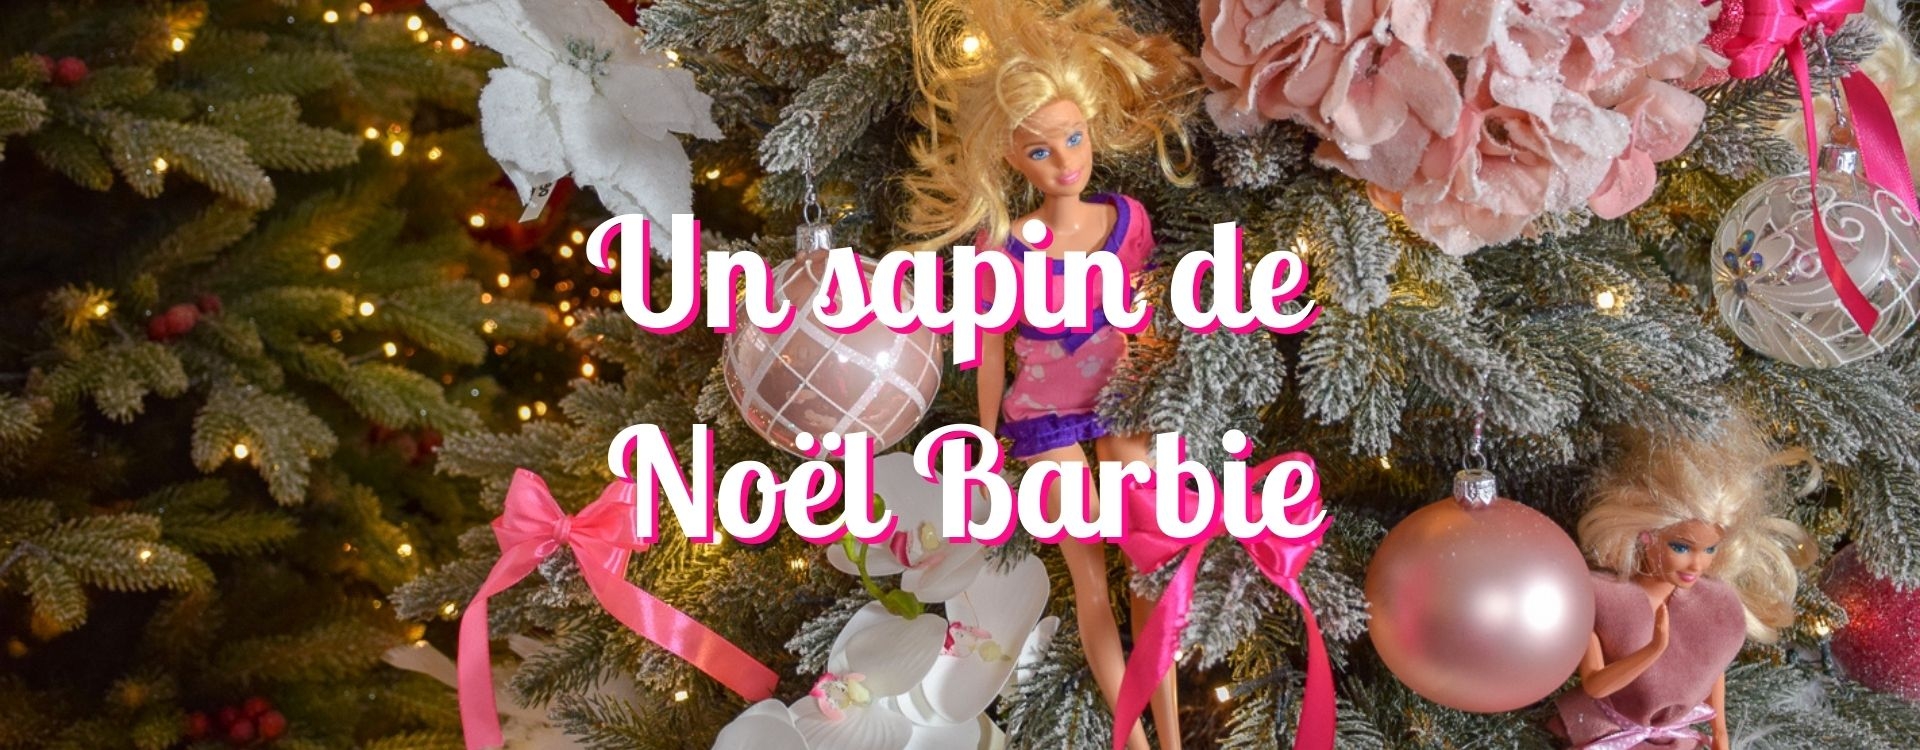 Barbie de noel - Barbie